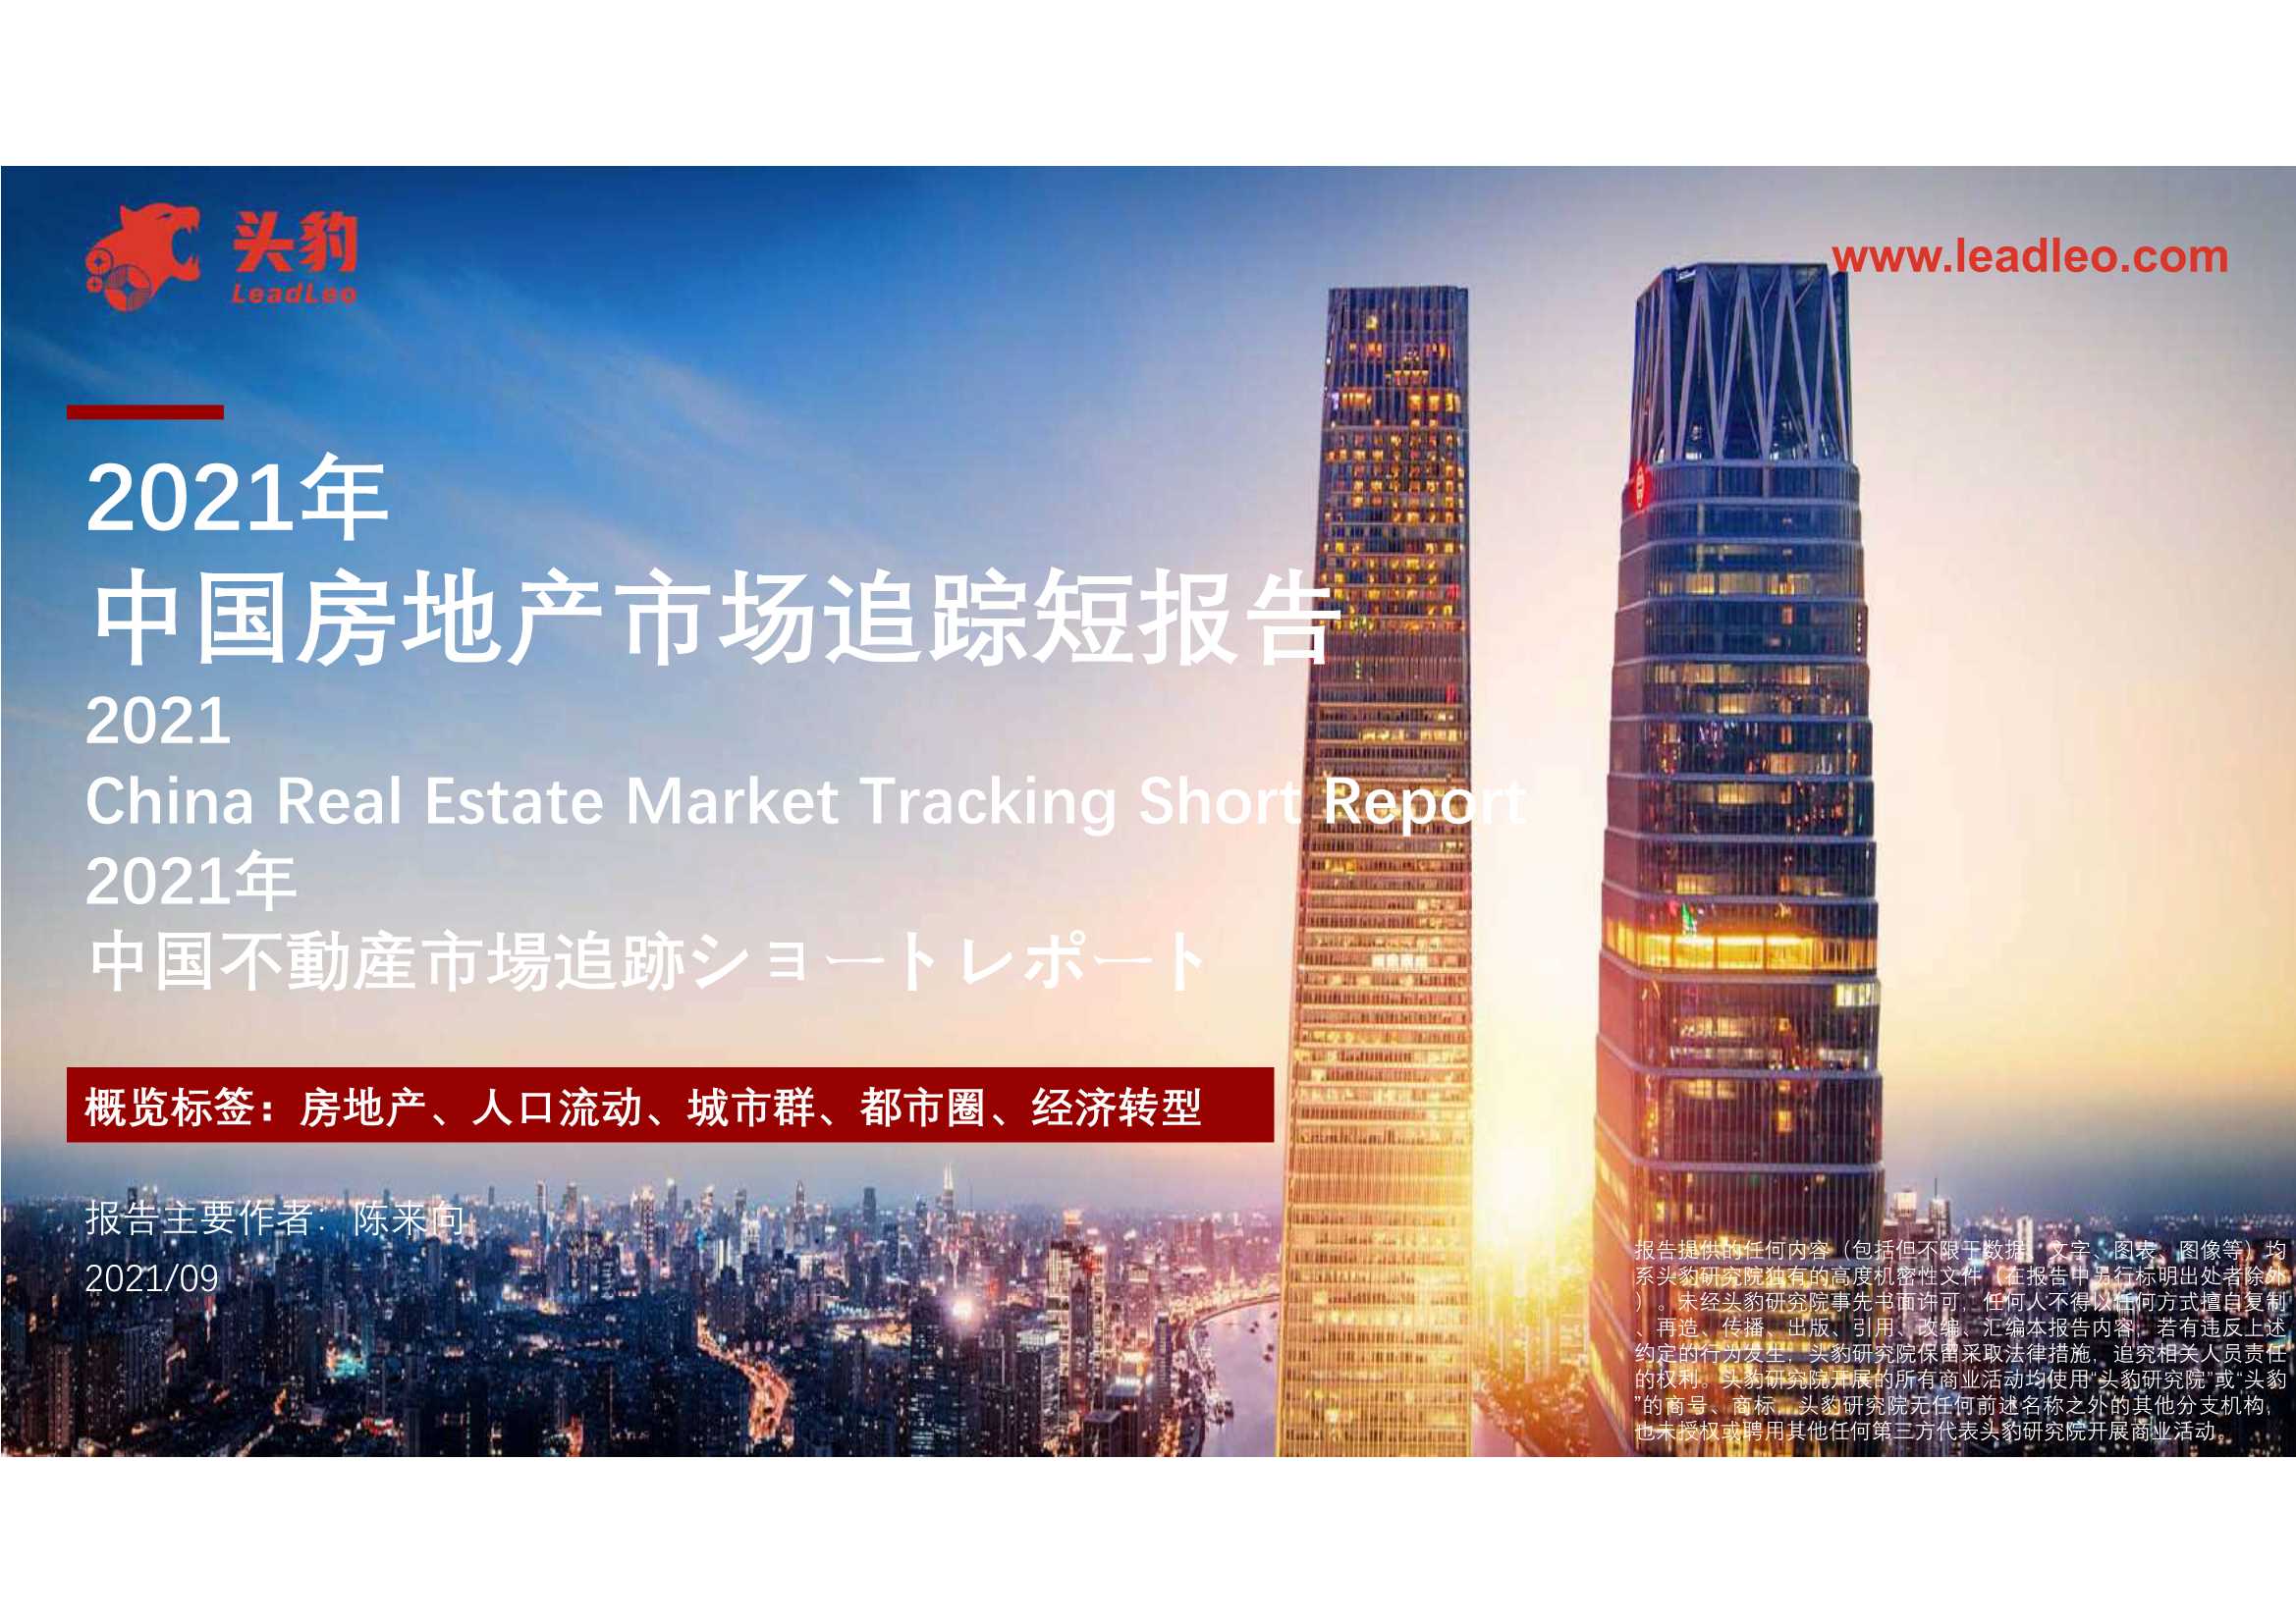 头豹研究院-2021年中国房地产市场追踪短报告-2021.10-30页